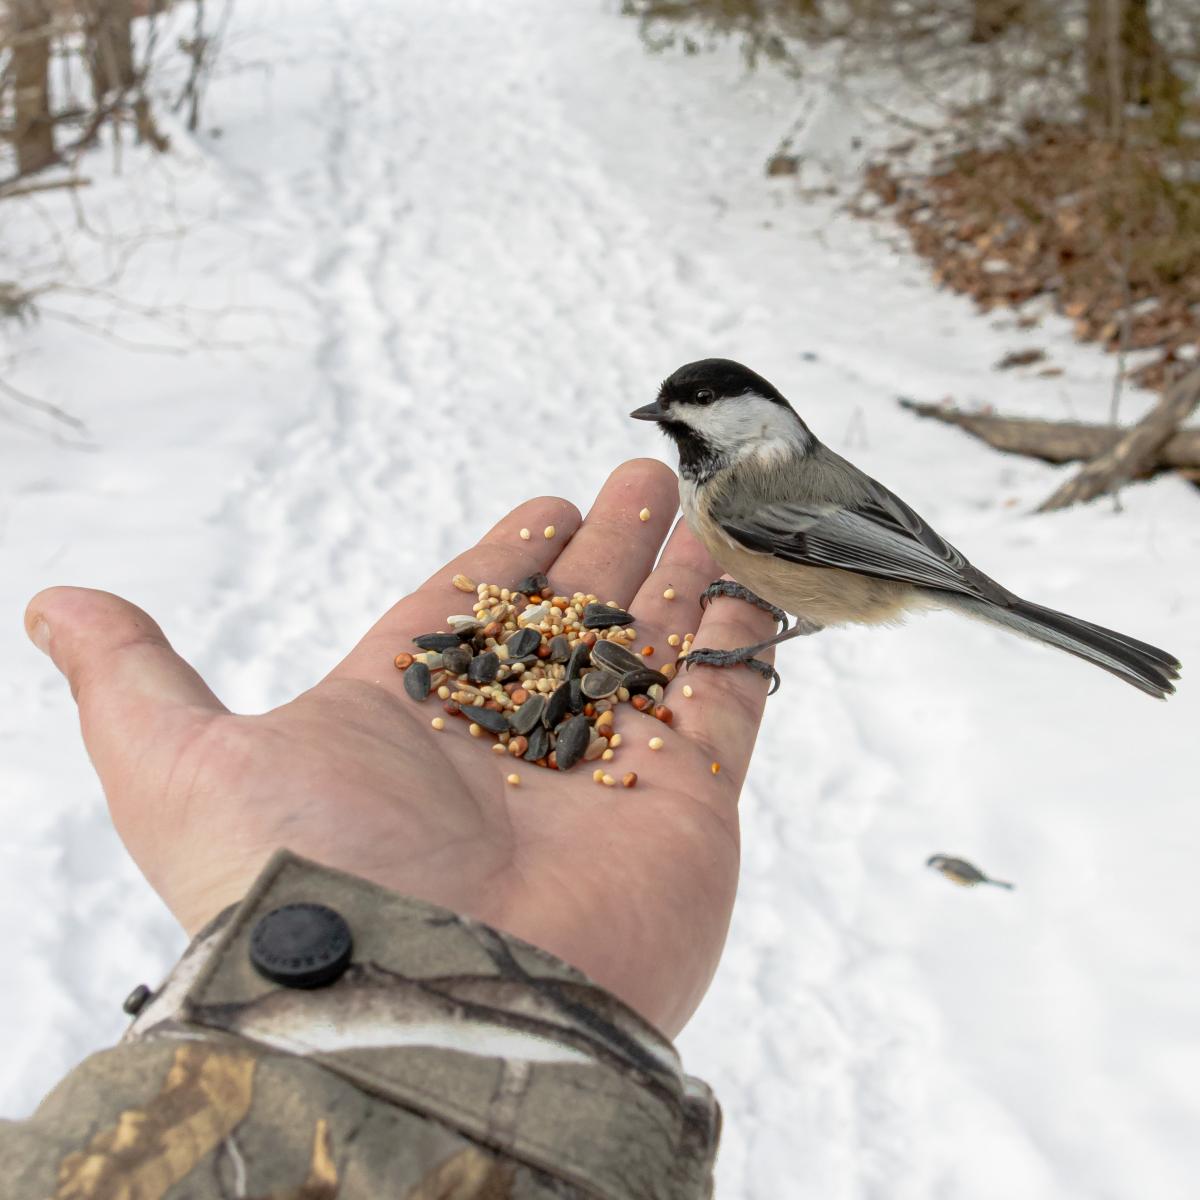 Как сделать кормушку для птиц своими руками из подручных материалов